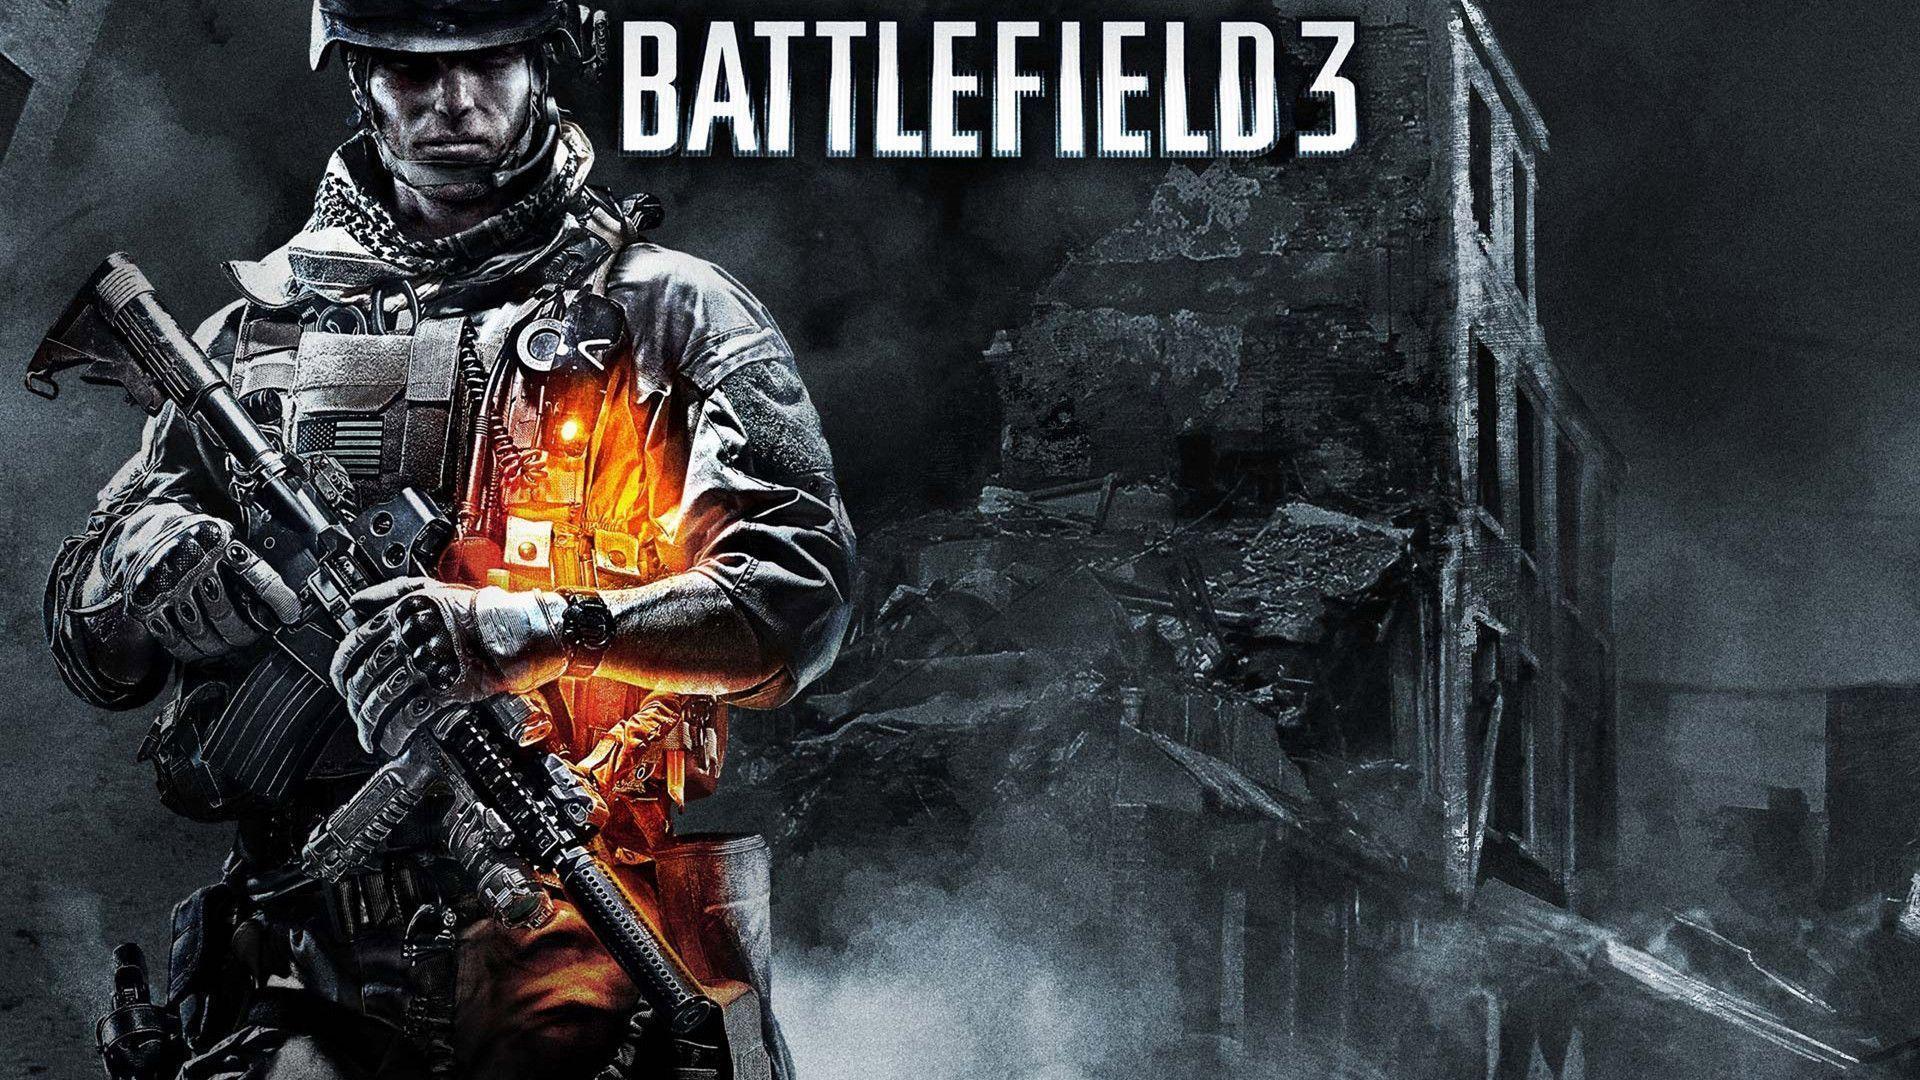 Battlefield 3 HD Wallpaper. Download HD Wallpaper, High